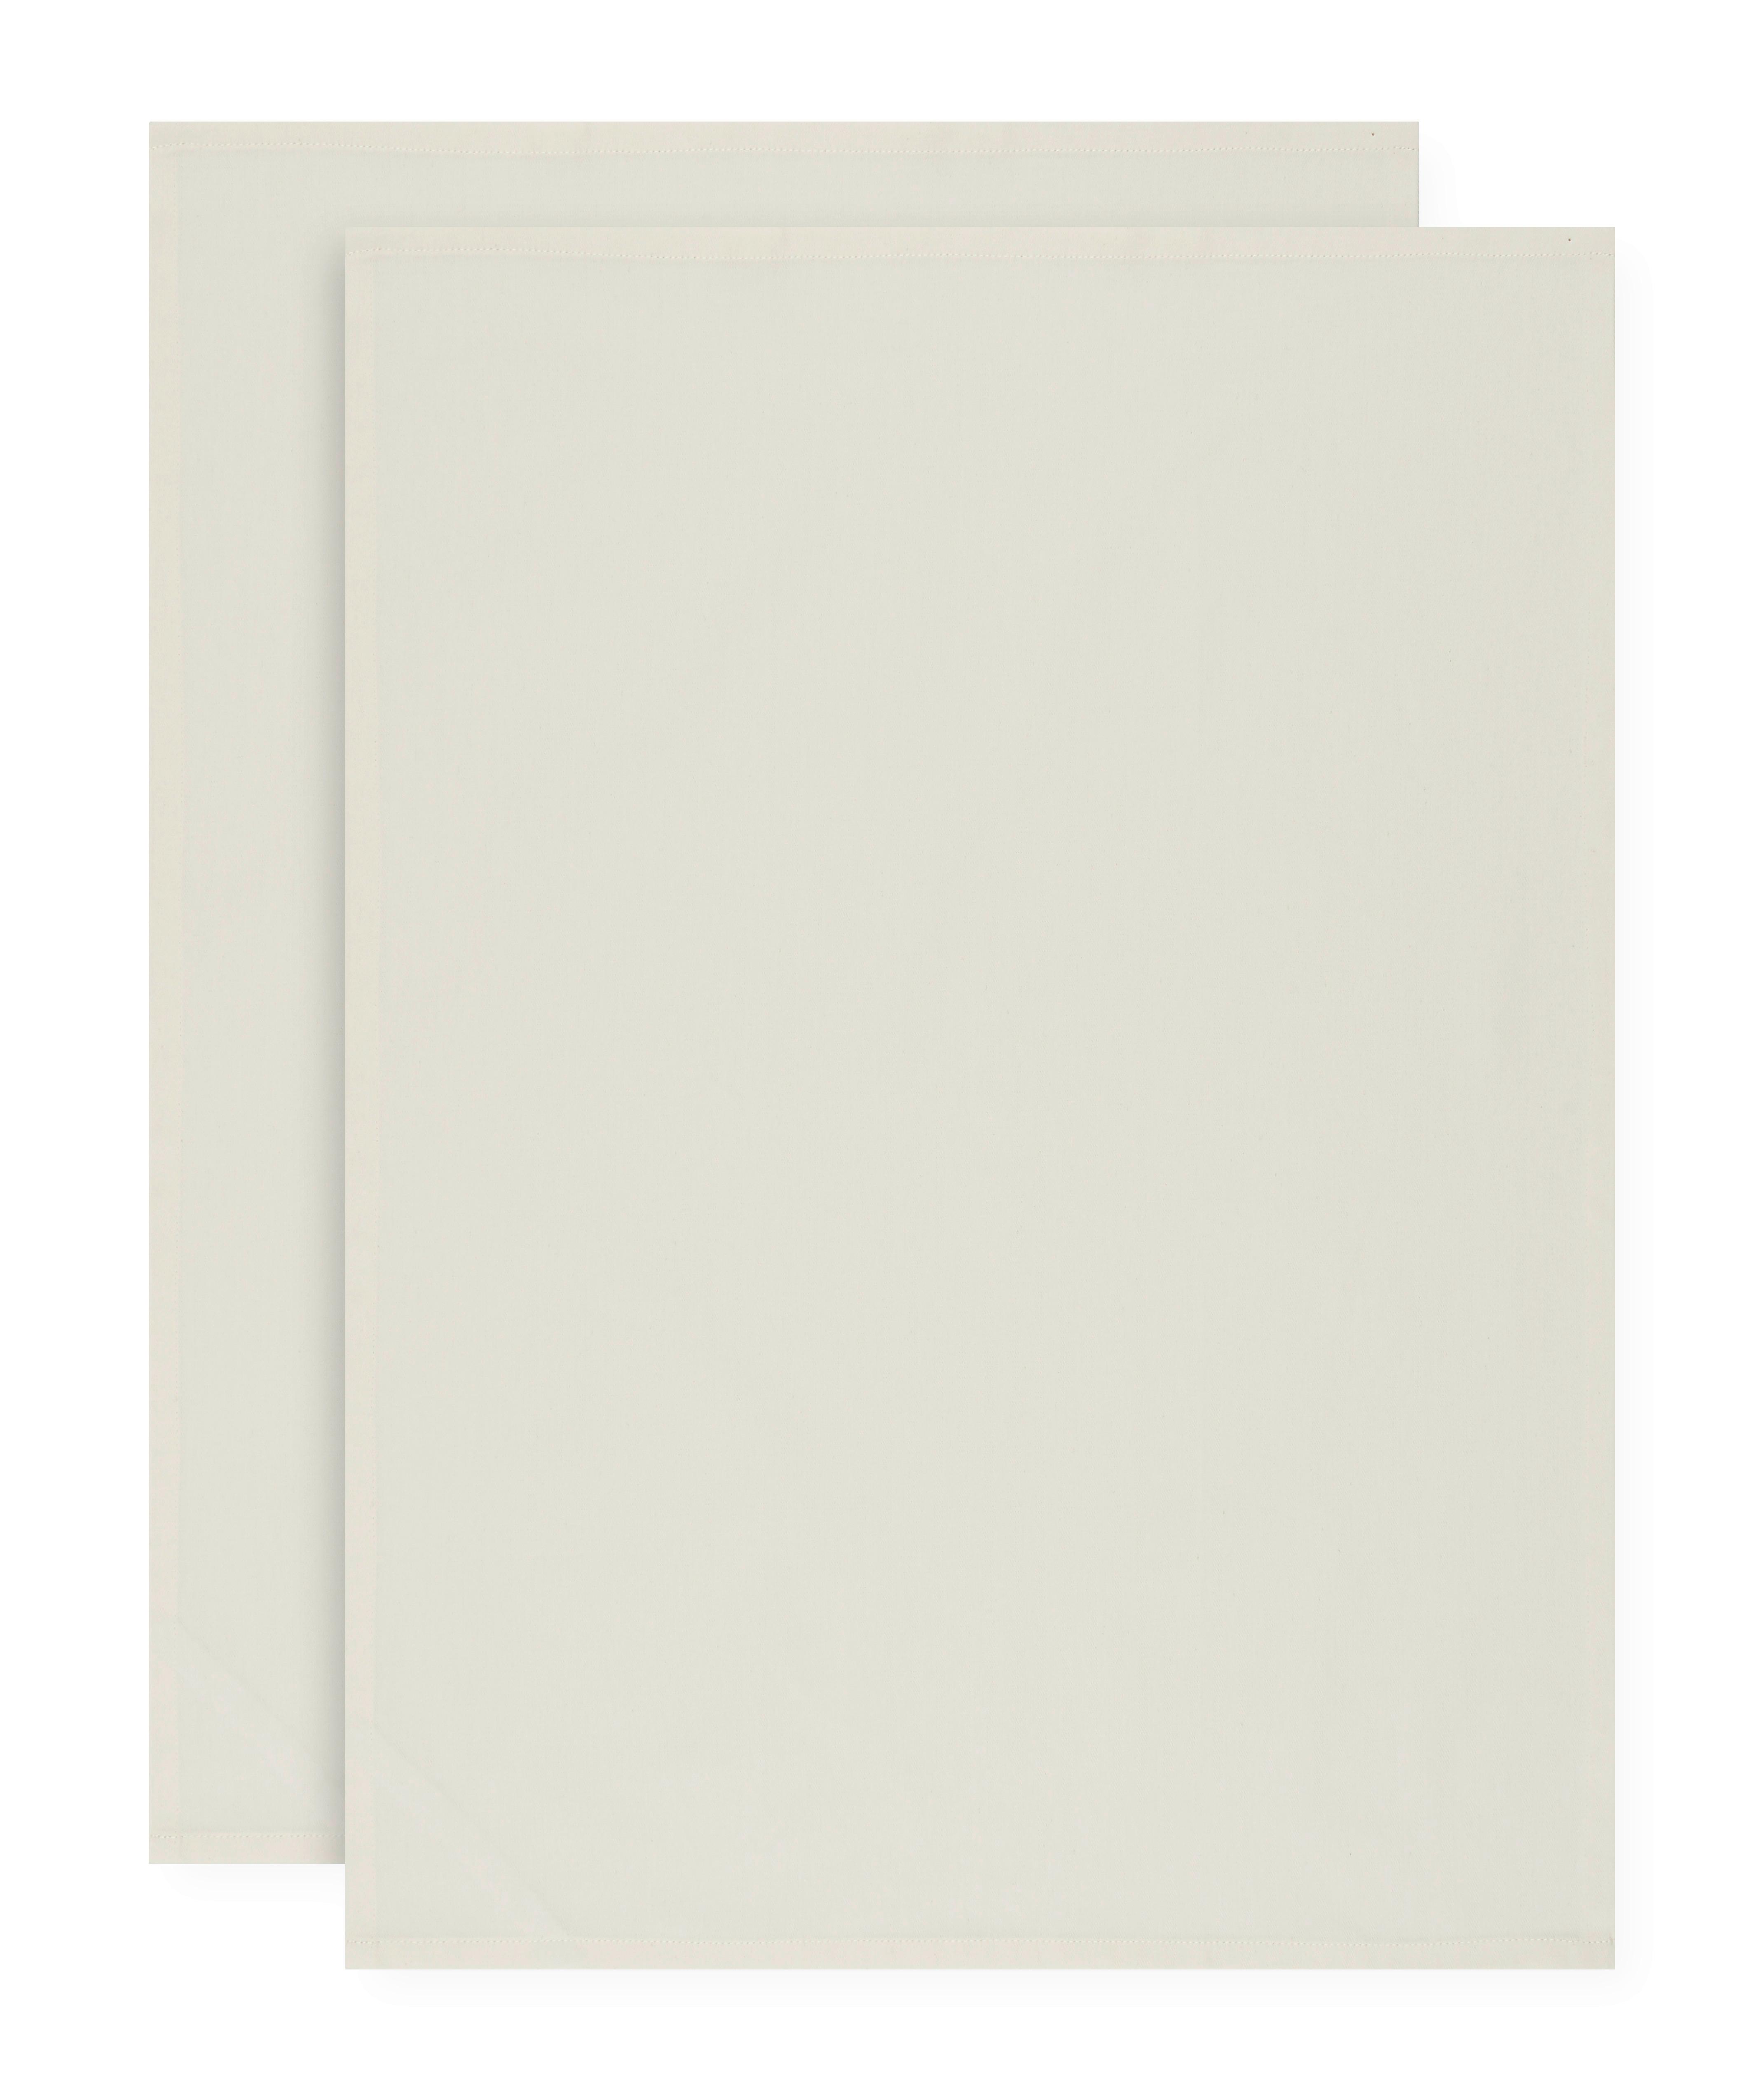 GESCHIRRTUCH-SET HARRY - Weiß, KONVENTIONELL, Textil (50/70cm) - Modern Living